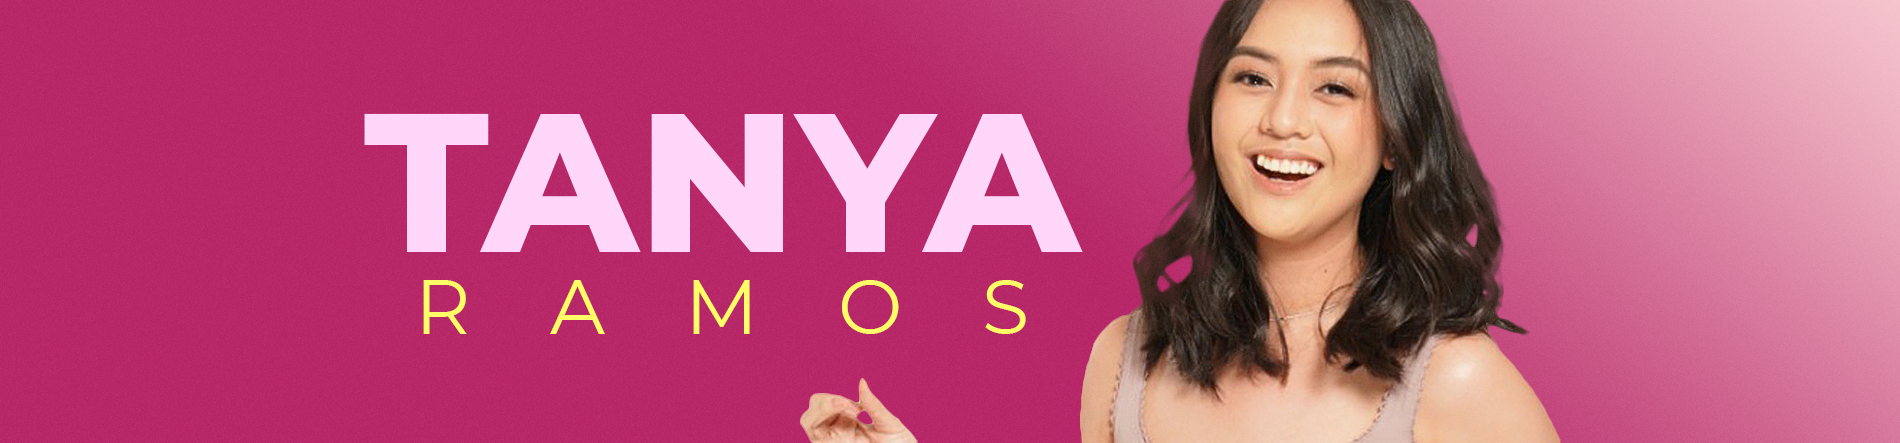 Tanya Ramos Desktop Banner